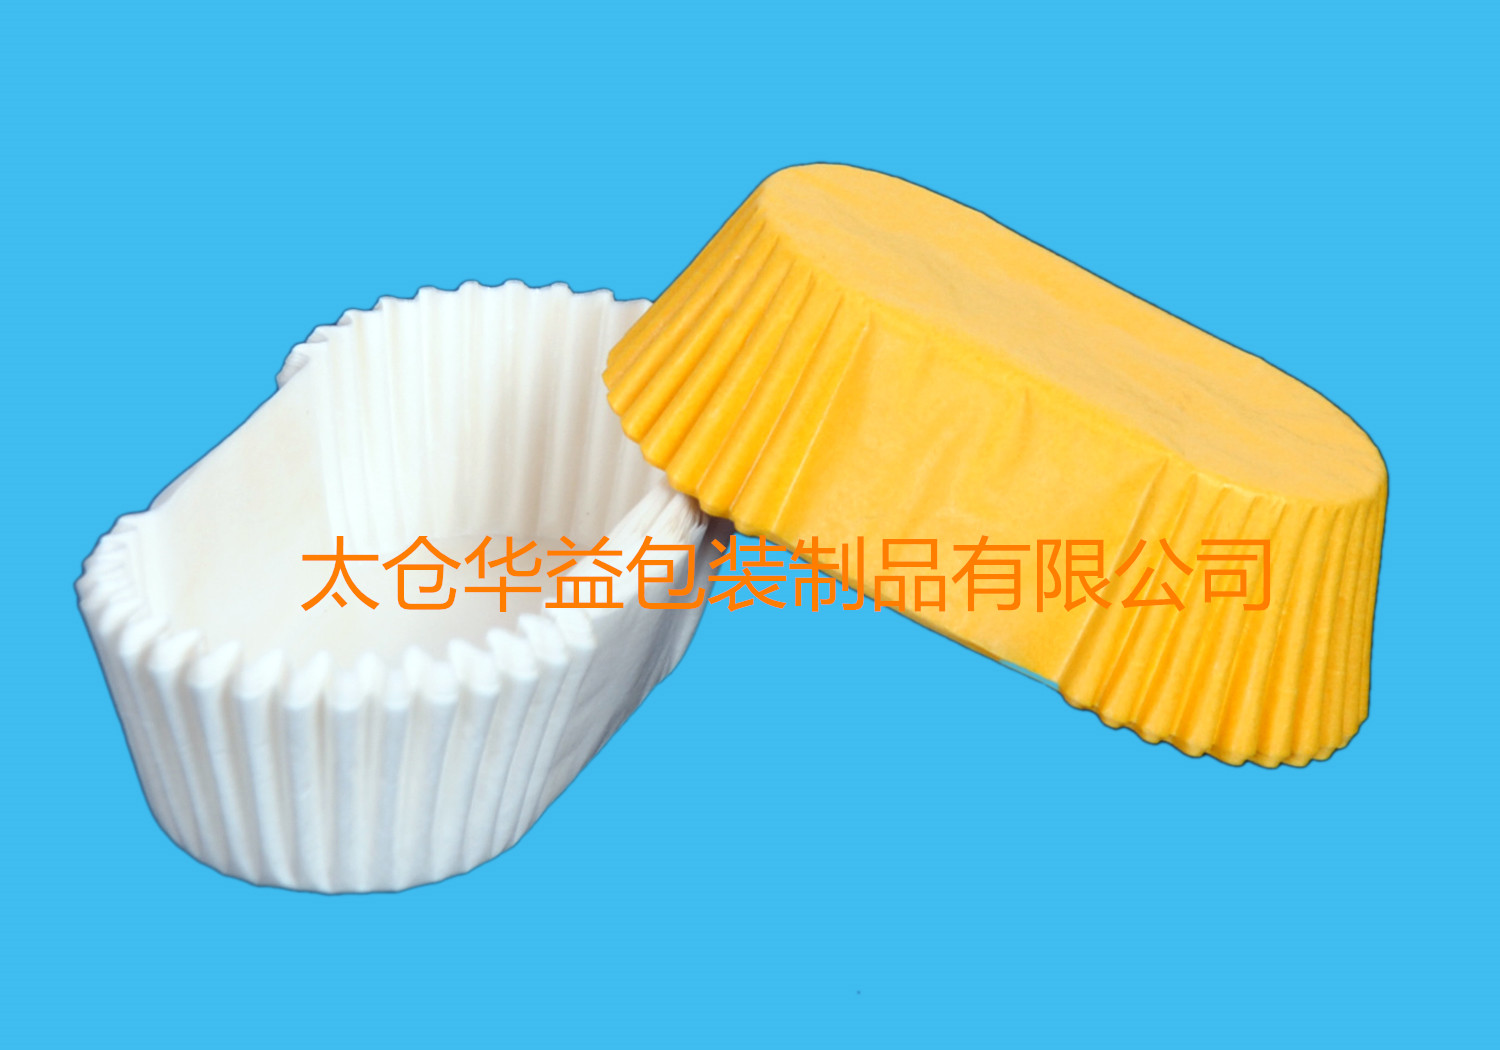 天津市同行业很低价销售船形蛋糕纸杯、法式蛋糕纸托、